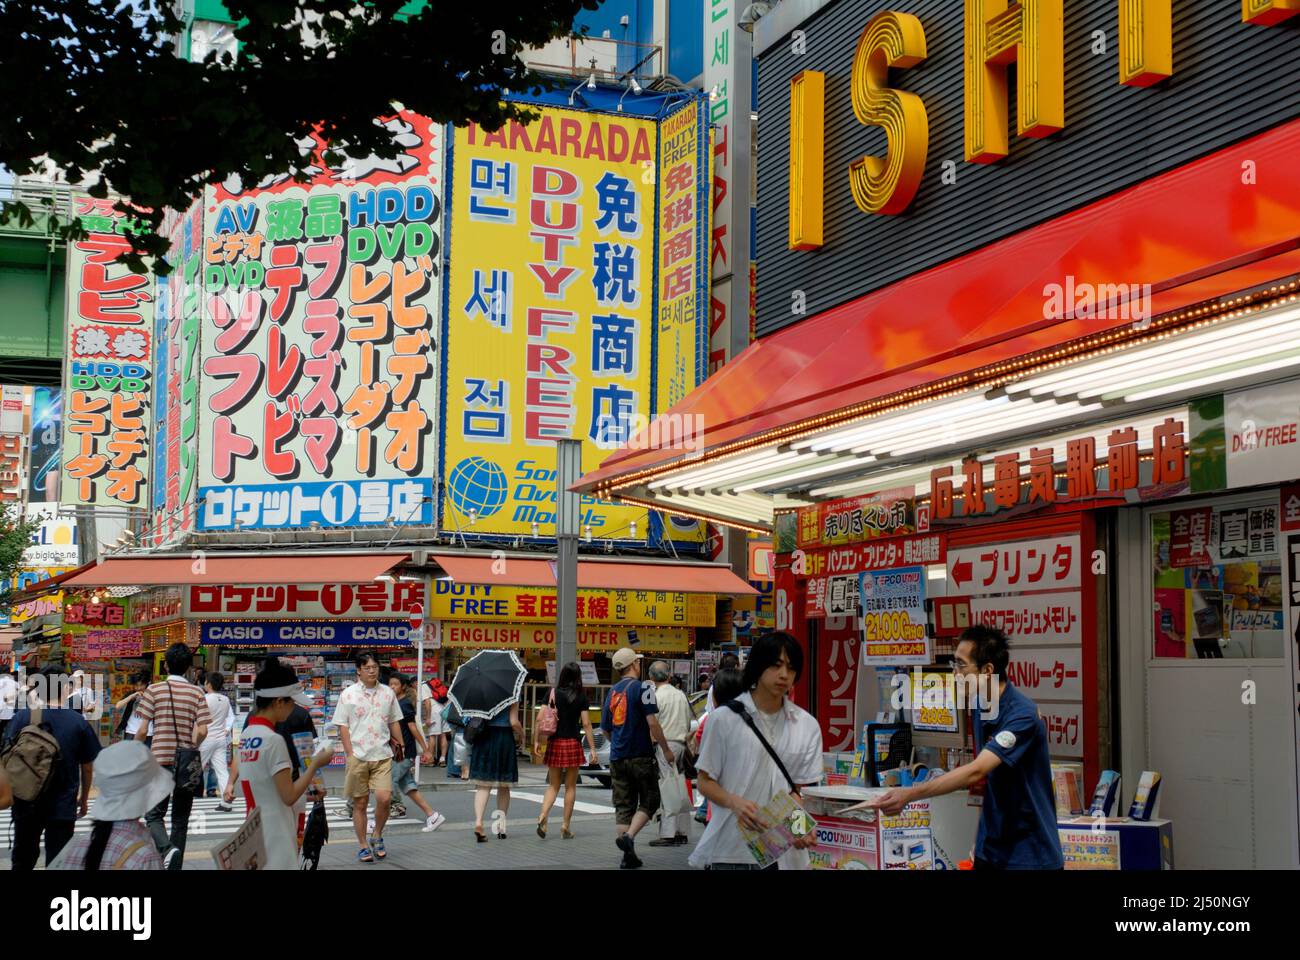 Akihabara es el centro eléctrico de descuento de Tokio. Foto de stock